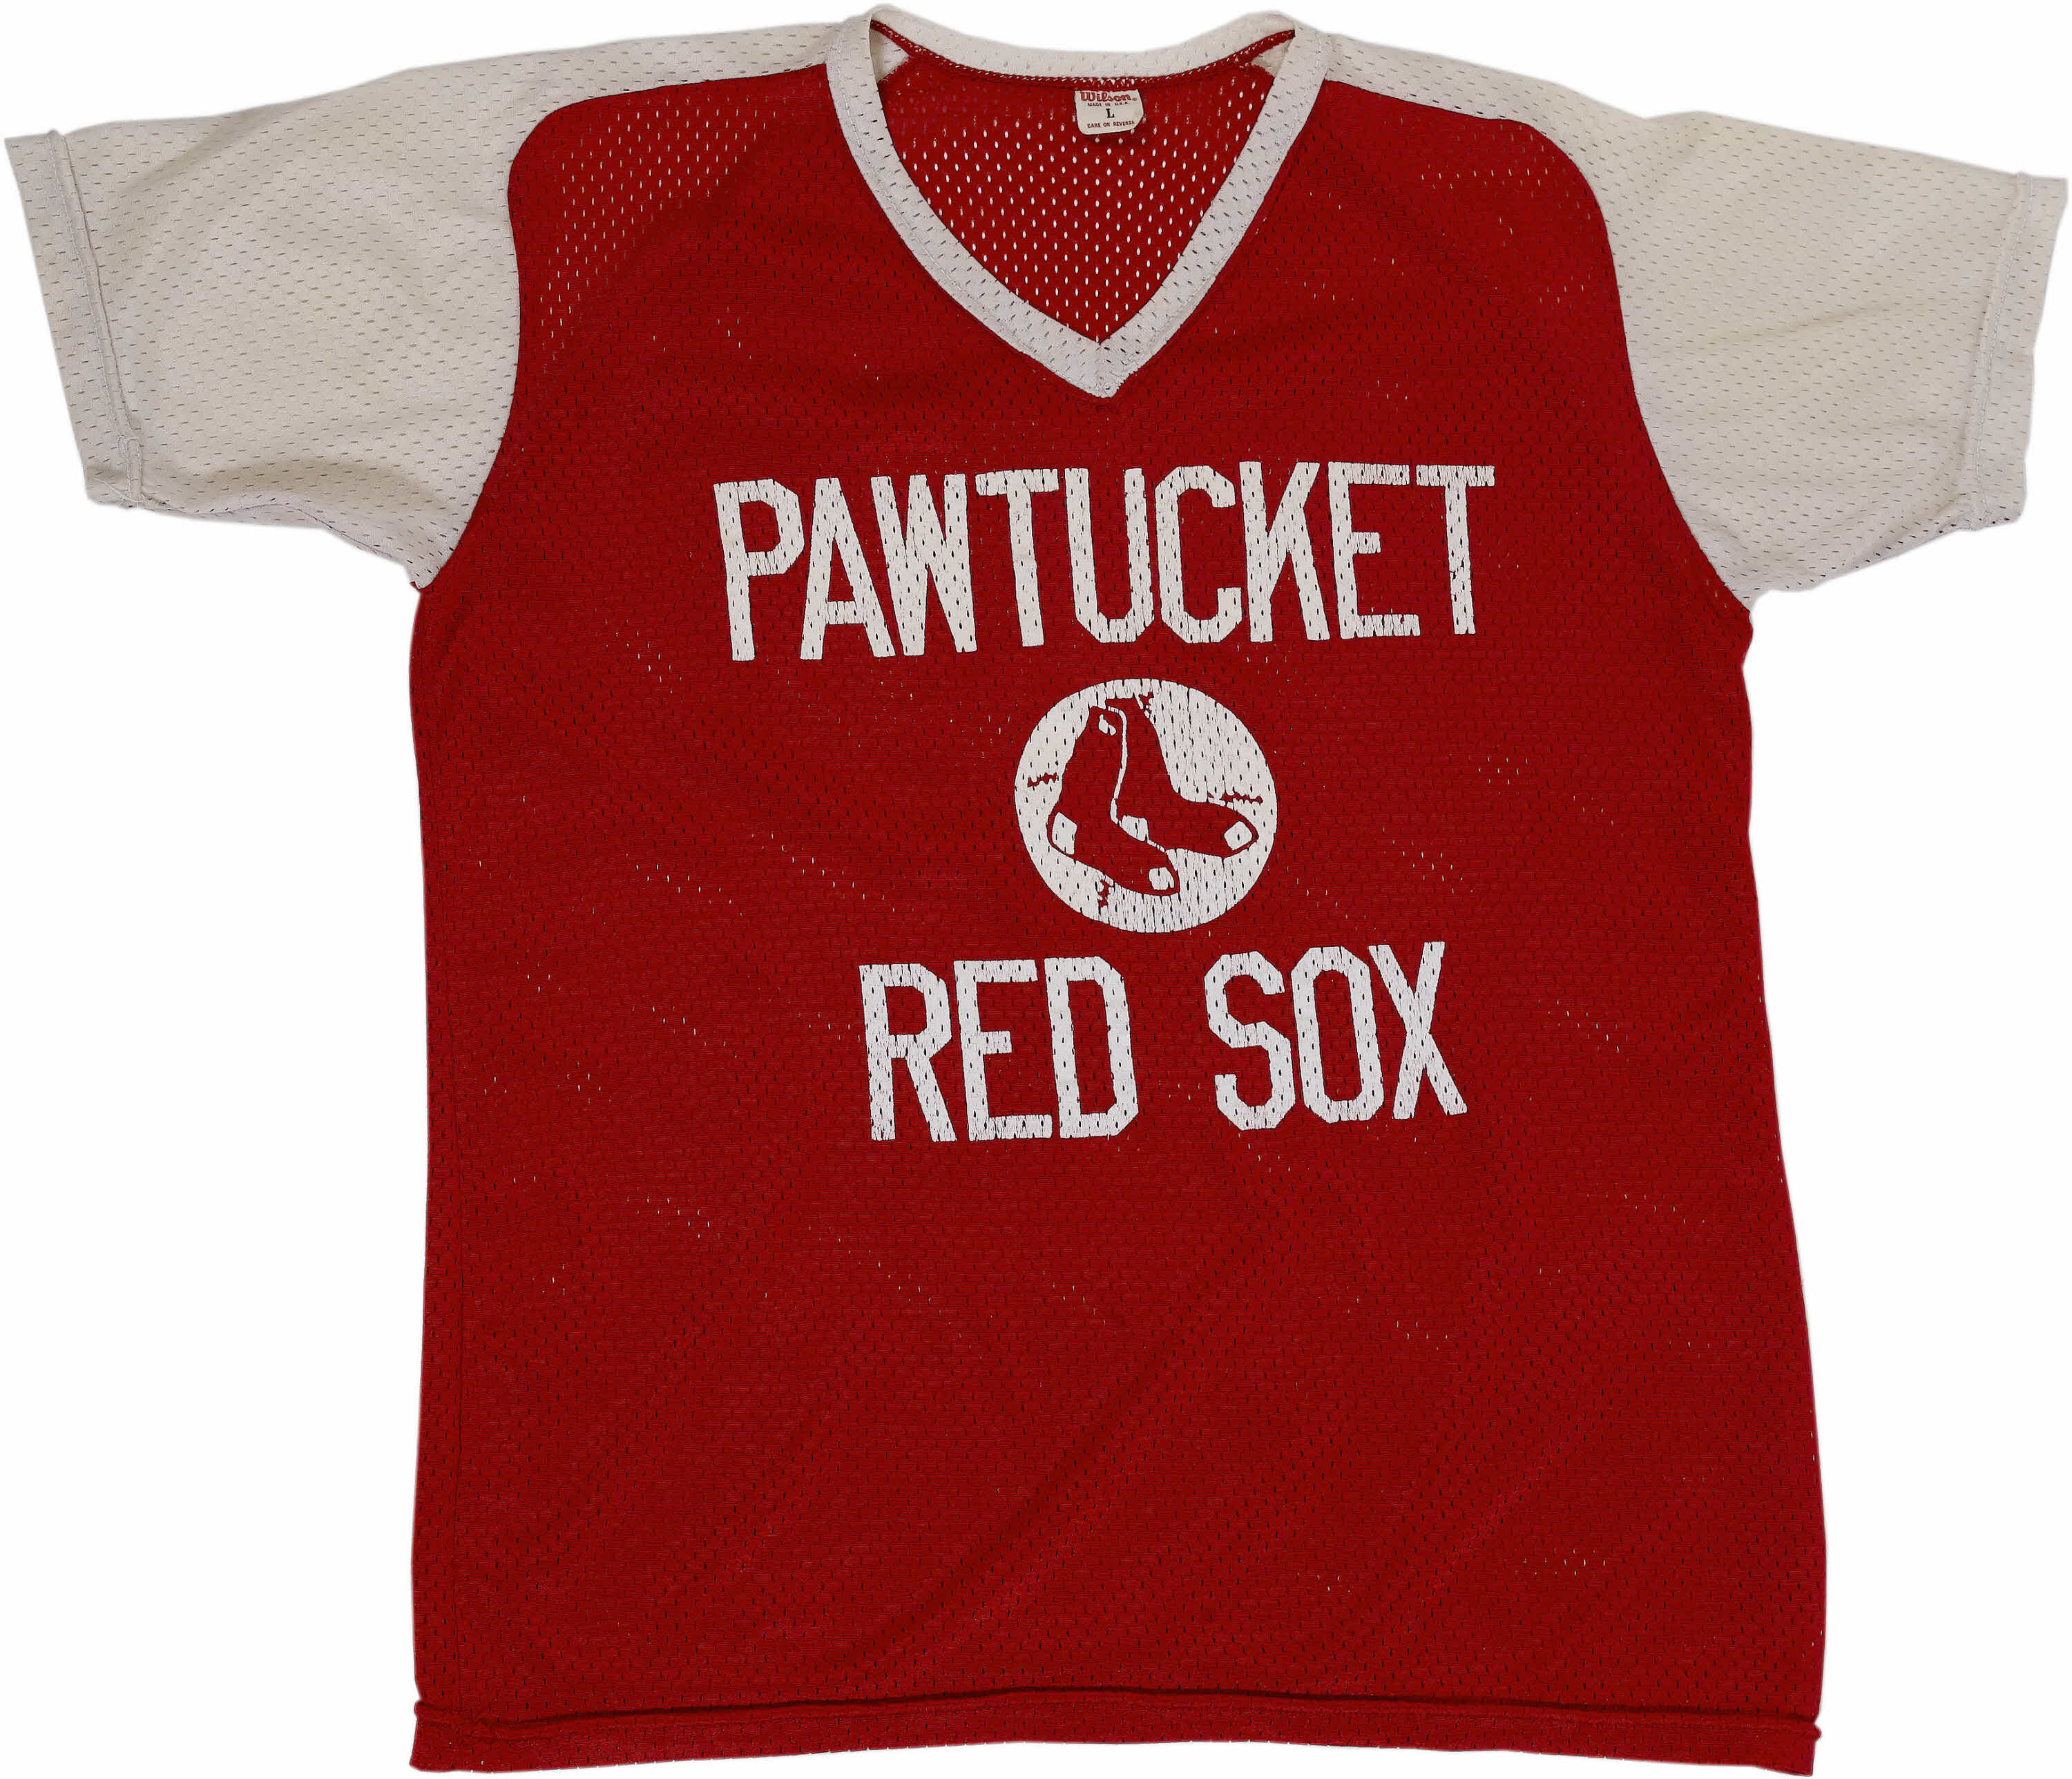 Vintage pawtucket red sox - Gem